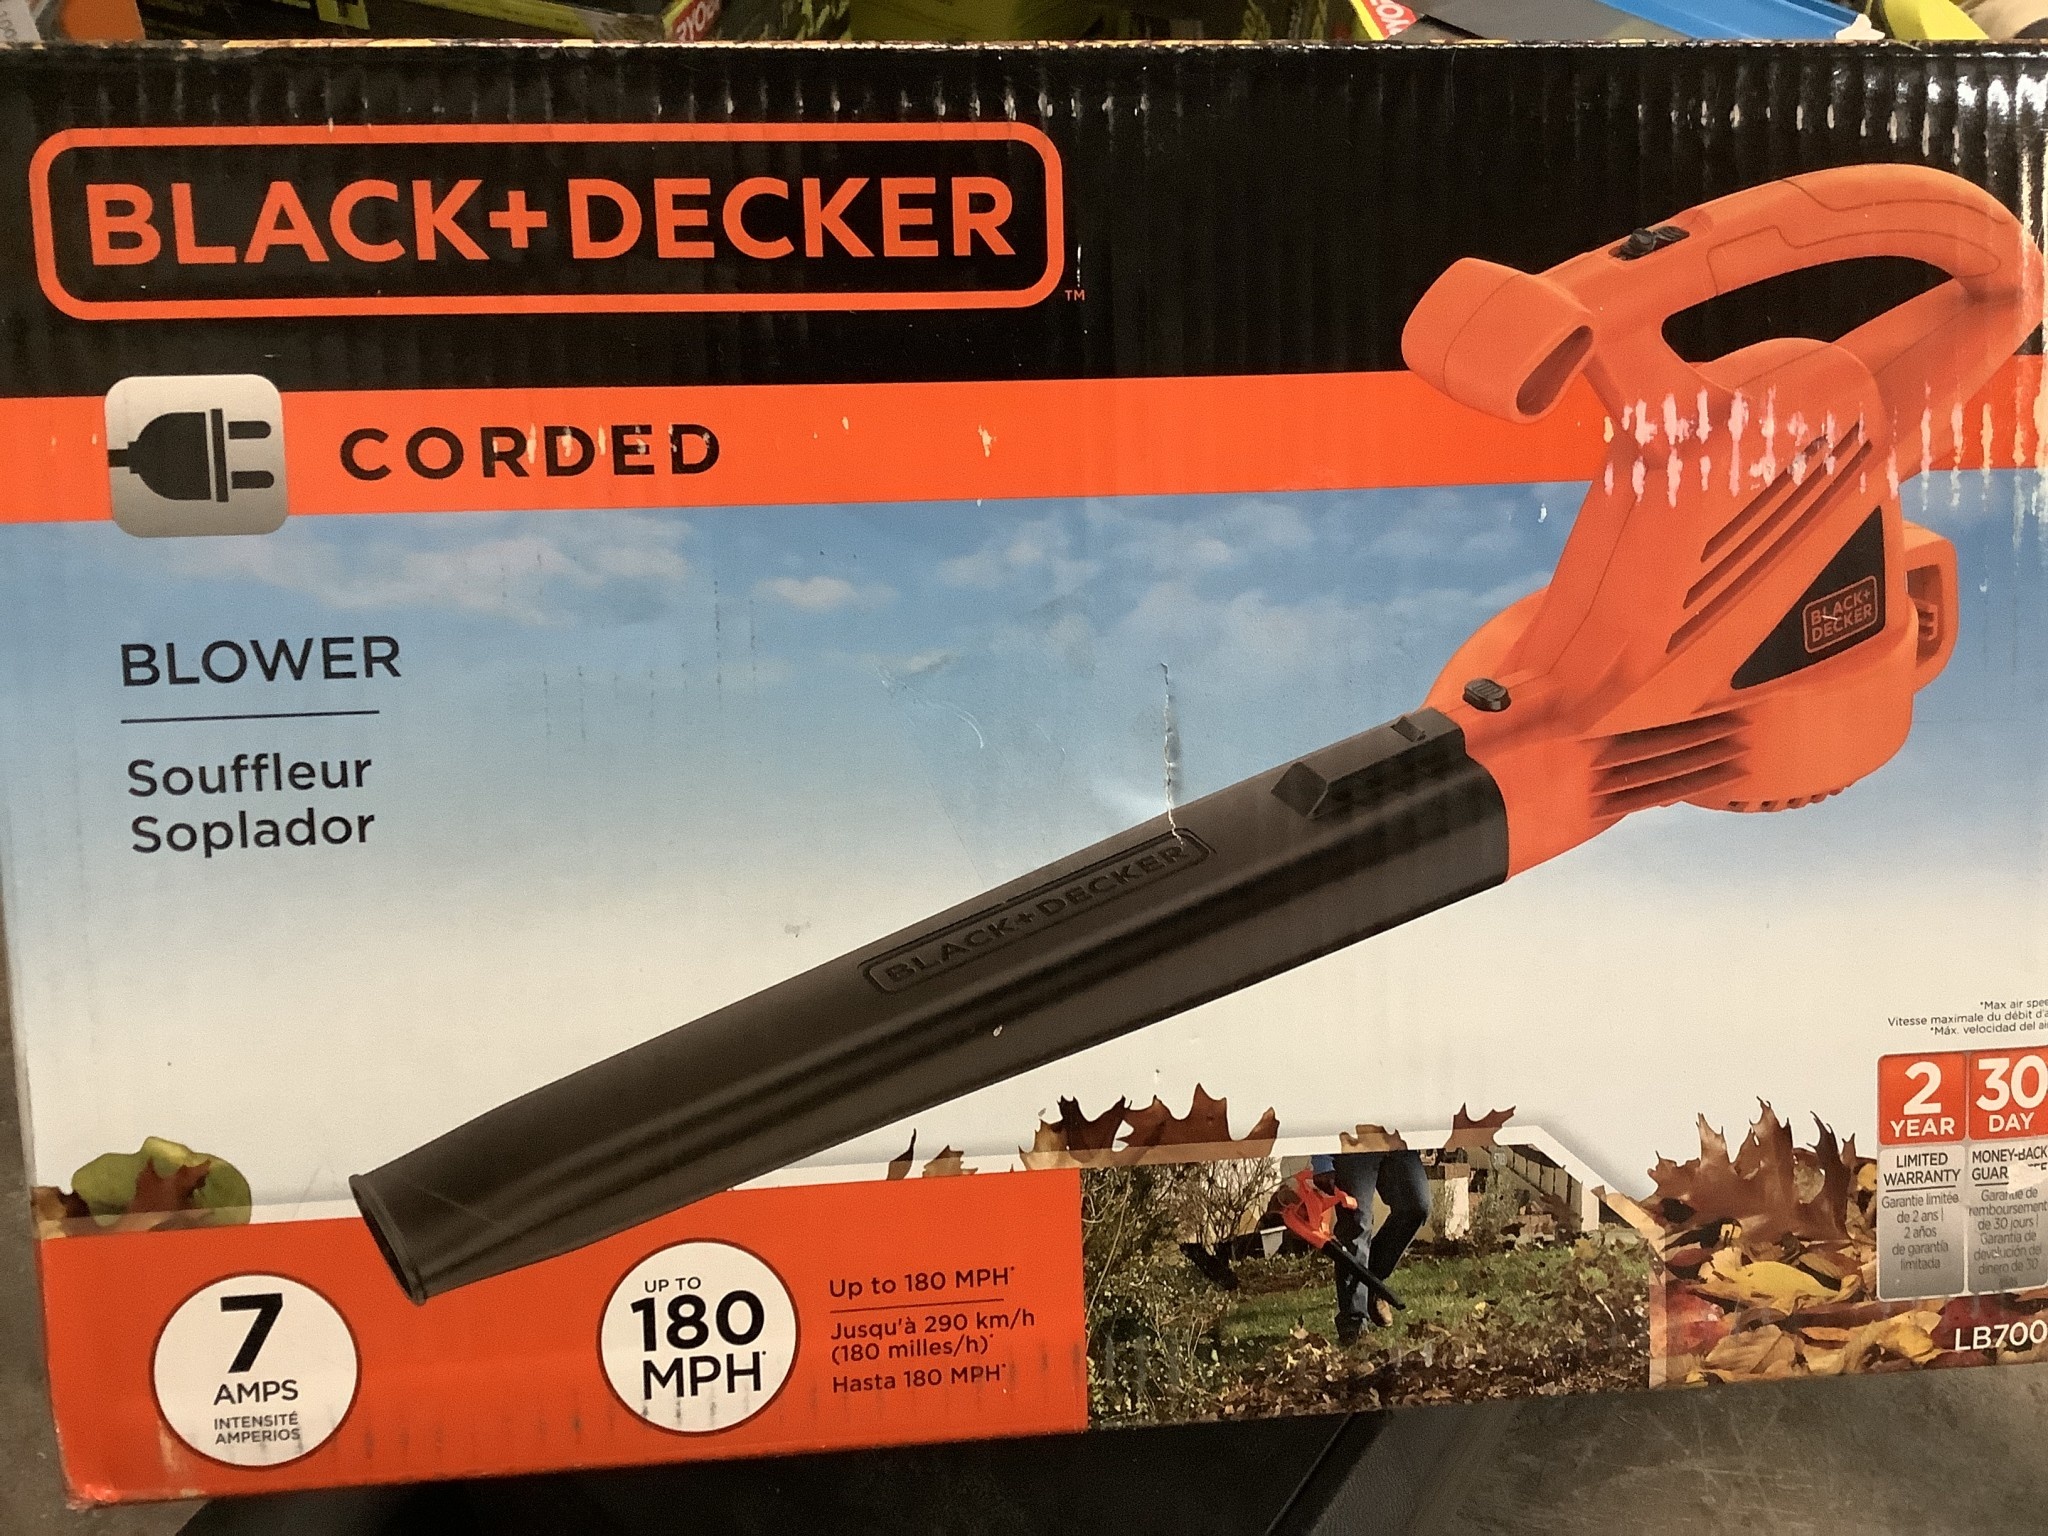 Black+Decker leaf blower under $30 on